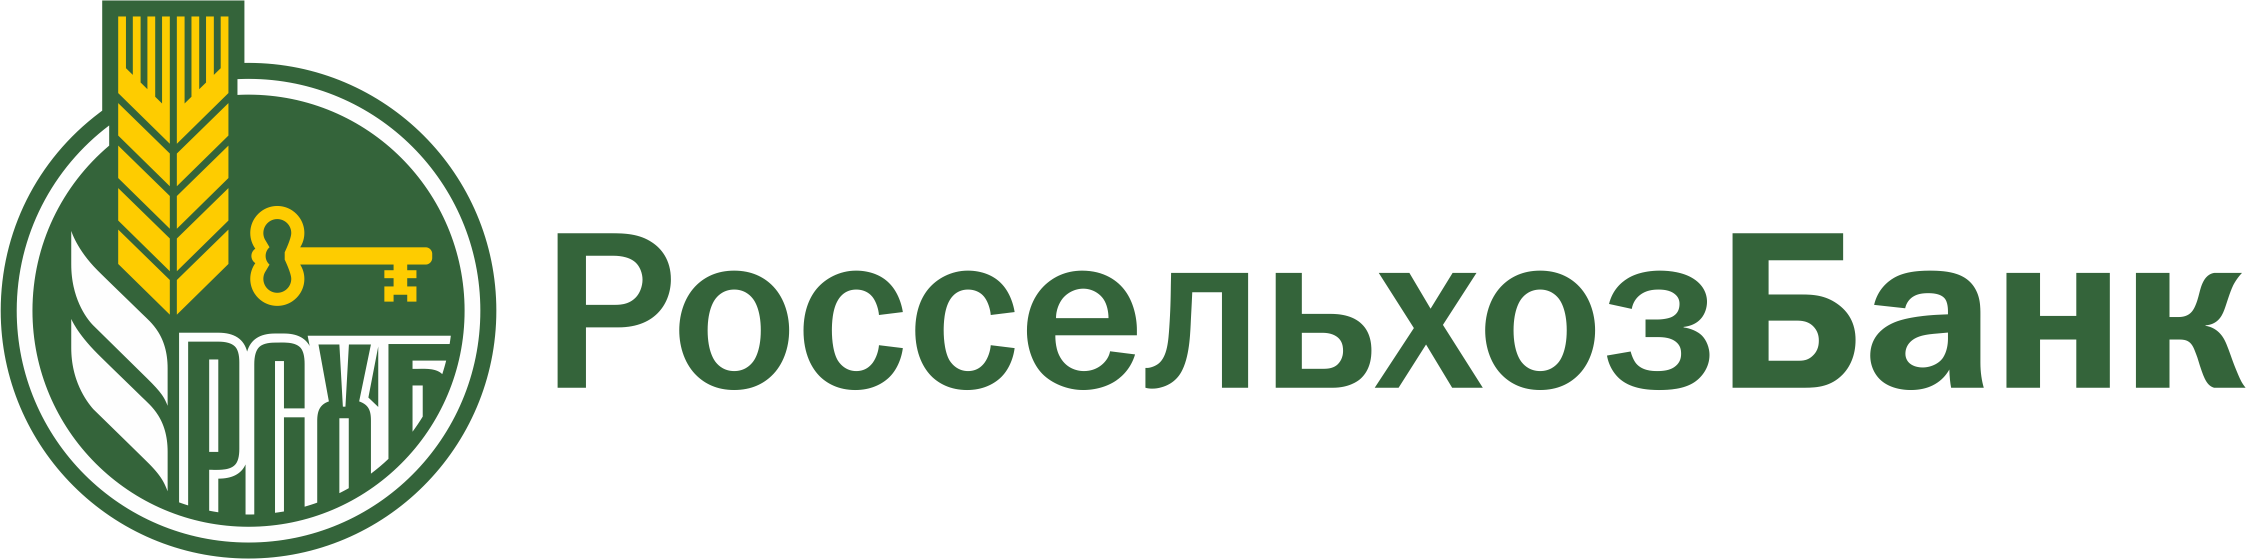 Акционерное общество «Российский Сельскохозяйственный банк»